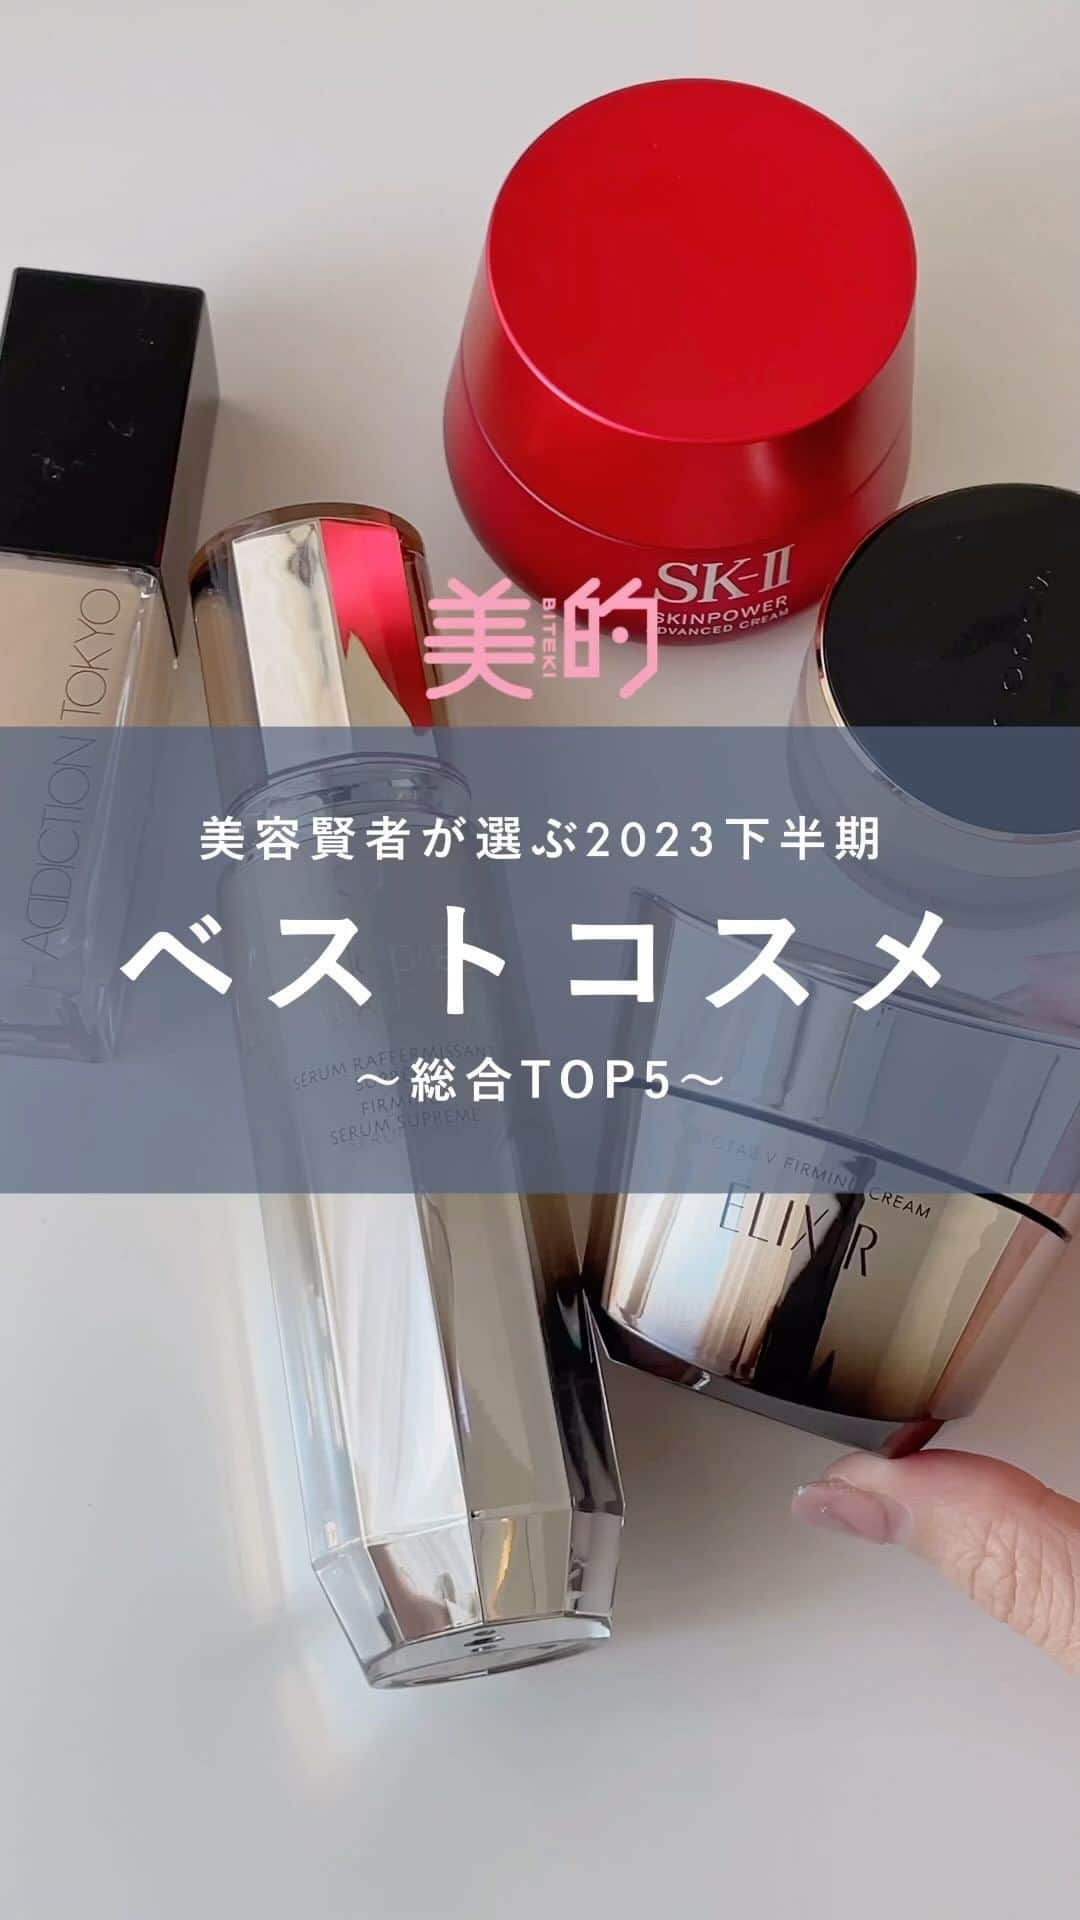 美的 Biteki's official Instagram! のインスタグラム：「╲美容賢者が選ぶ2023年下半期ベストコスメ総合TOP5まとめ／ ◆第1位 クレ・ド・ポー ボーテ セラムラフェルミサンS n 40g ￥36,300（税込） ◆第2位 SUQQU ザ ファンデーション 24色（日本国内では24色中15色購入可能） 30g ￥14,300（税込） SPF30・PA++（020・105・110・115・125・205・210・220）、SPF30・PA+++（025・030・035・040・050・130・140・155・240・260）、SPF25・PA+++（060・165・180・265・280・29 ◆第3位 エリクシール トータルV ファーミングクリーム 50g ￥11,000 ◆第4位 SK-II スキンパワー アドバンスト クリーム 80g ￥24,200（税込） ◆第5位 アディクション ザ ファンデーション リフトグロウ SPF20・PA++ 30ml ￥6,600（税込）  oﾟo｡oﾟo｡oﾟo｡oﾟo｡oﾟoﾟo｡oﾟo 『美的』公式インスタグラム @bitekicom では新作コスメの速報情報＆全色スウォッチをどんどん公開中！ タメになる美容情報は美的.comをぜひご覧ください！ oﾟo｡oﾟo｡oﾟo｡oﾟo｡oﾟoﾟo｡oﾟo   #ベストコスメ#ベスコス#ベスコス2023#ベストコスメ2023#クレドポーボーテ#スキンケア#メイク#ベースメイク#SUQQU#エリクシール#SKii#アディクション#bitekicom」